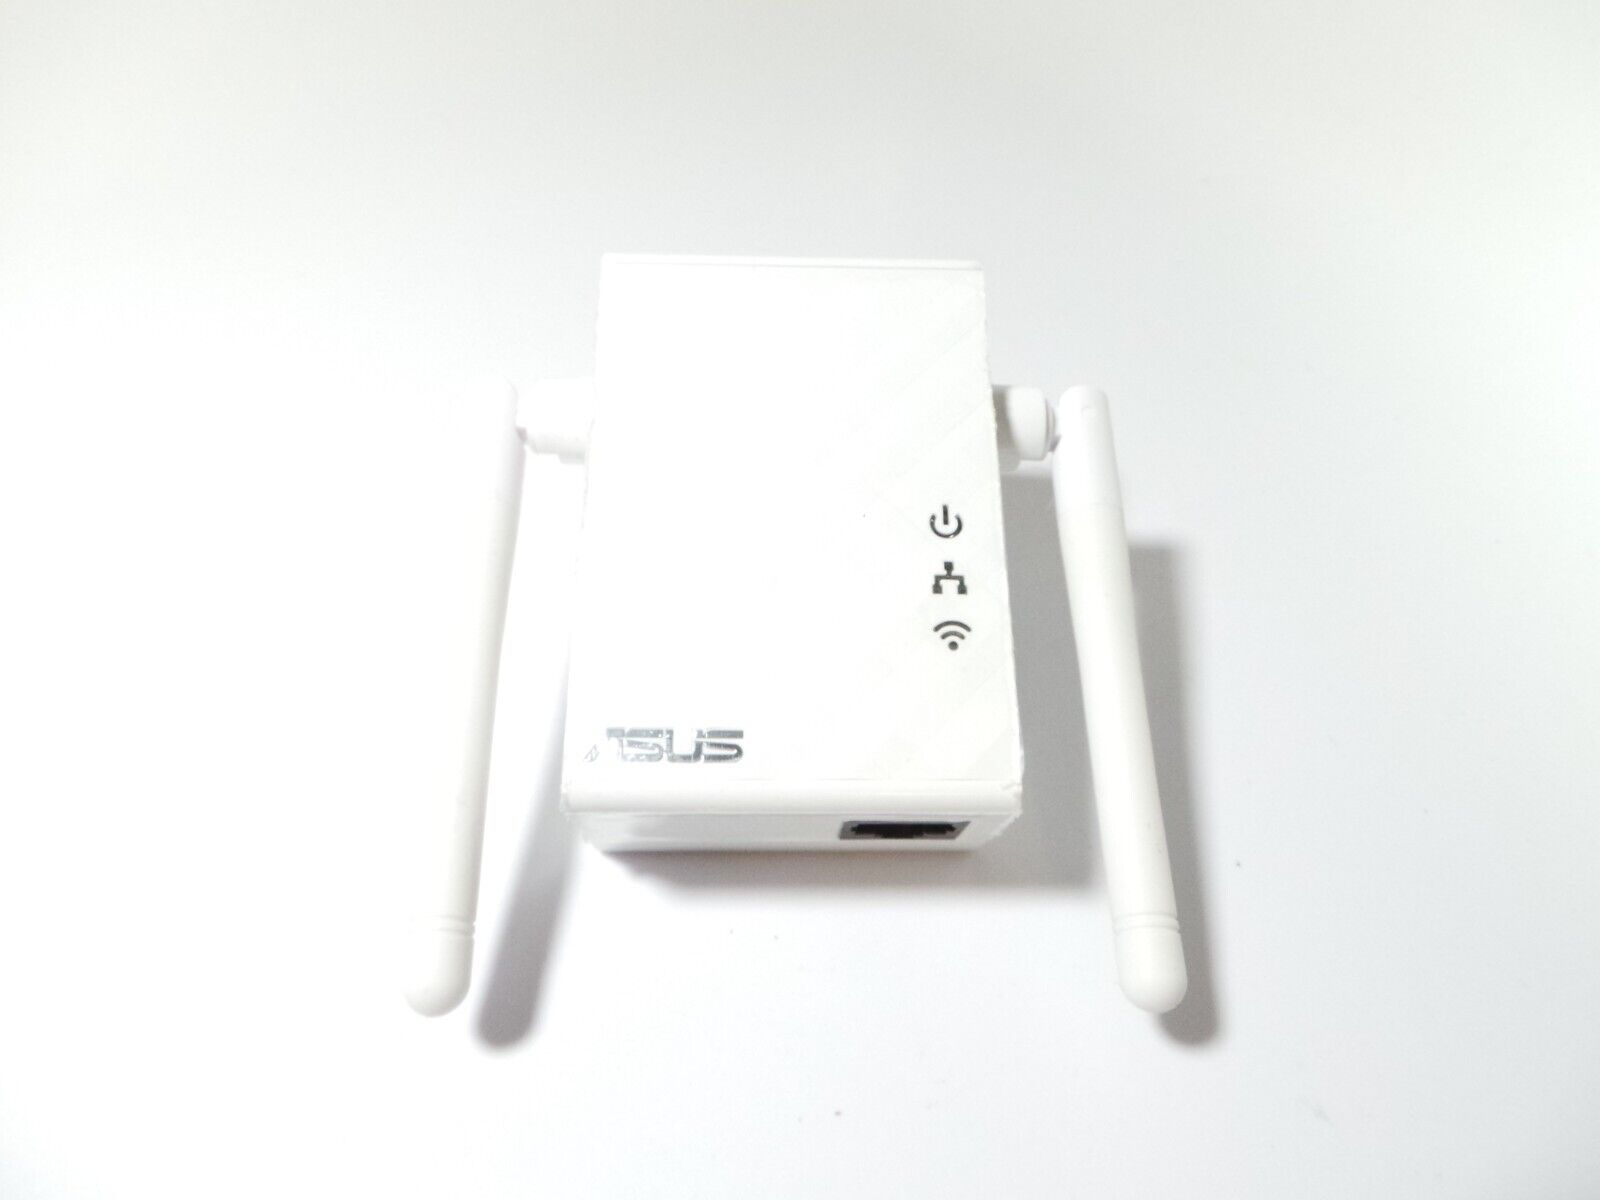 Asus Wireless N300 Repeater Range Extender Access Point Media Bridge RP-N12